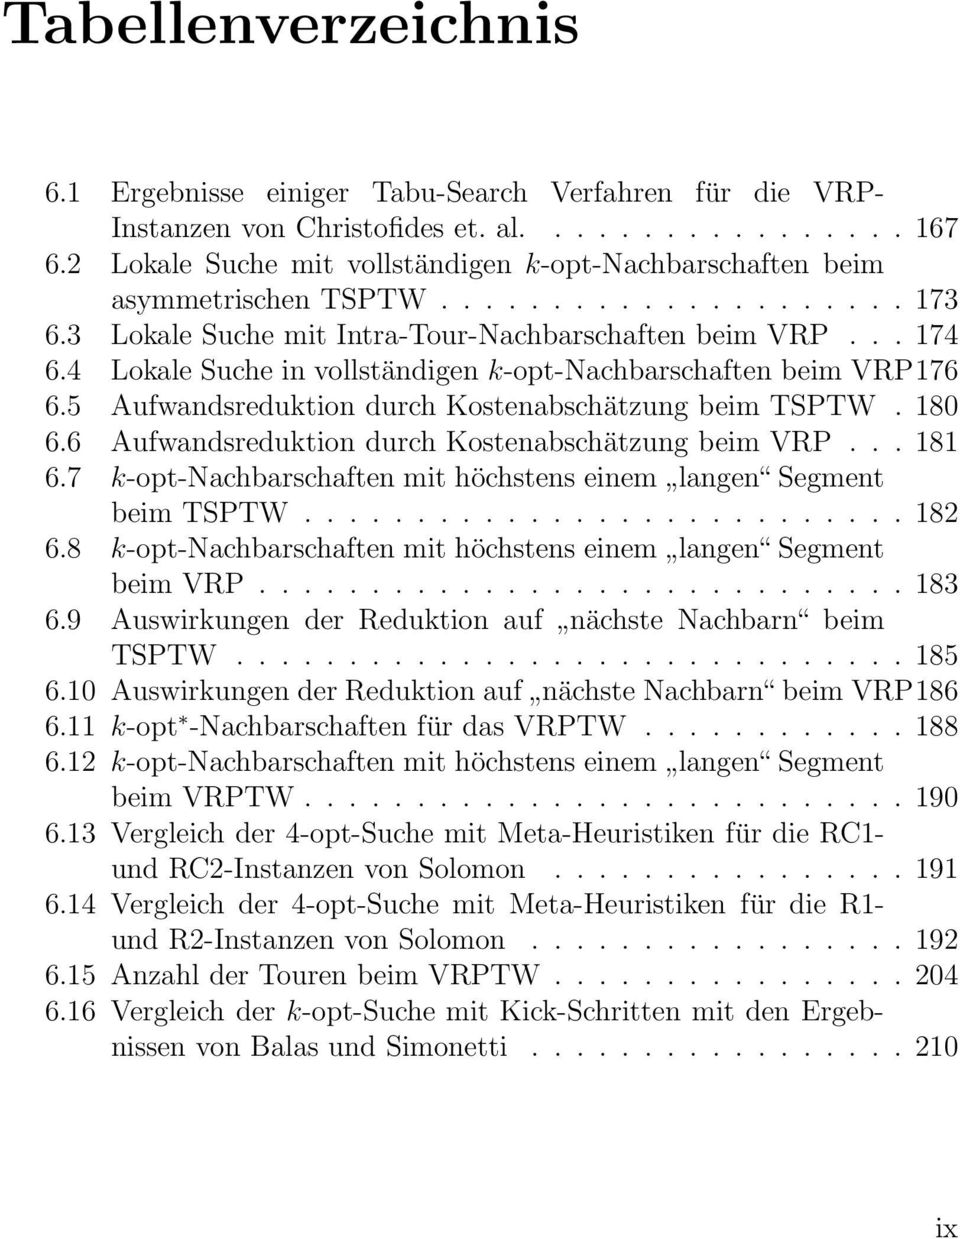 4 Lokale Suche in vollständigen k-opt-nachbarschaften beim VRP176 6.5 Aufwandsreduktion durch Kostenabschätzung beim TSPTW. 180 6.6 Aufwandsreduktion durch Kostenabschätzung beim VRP... 181 6.